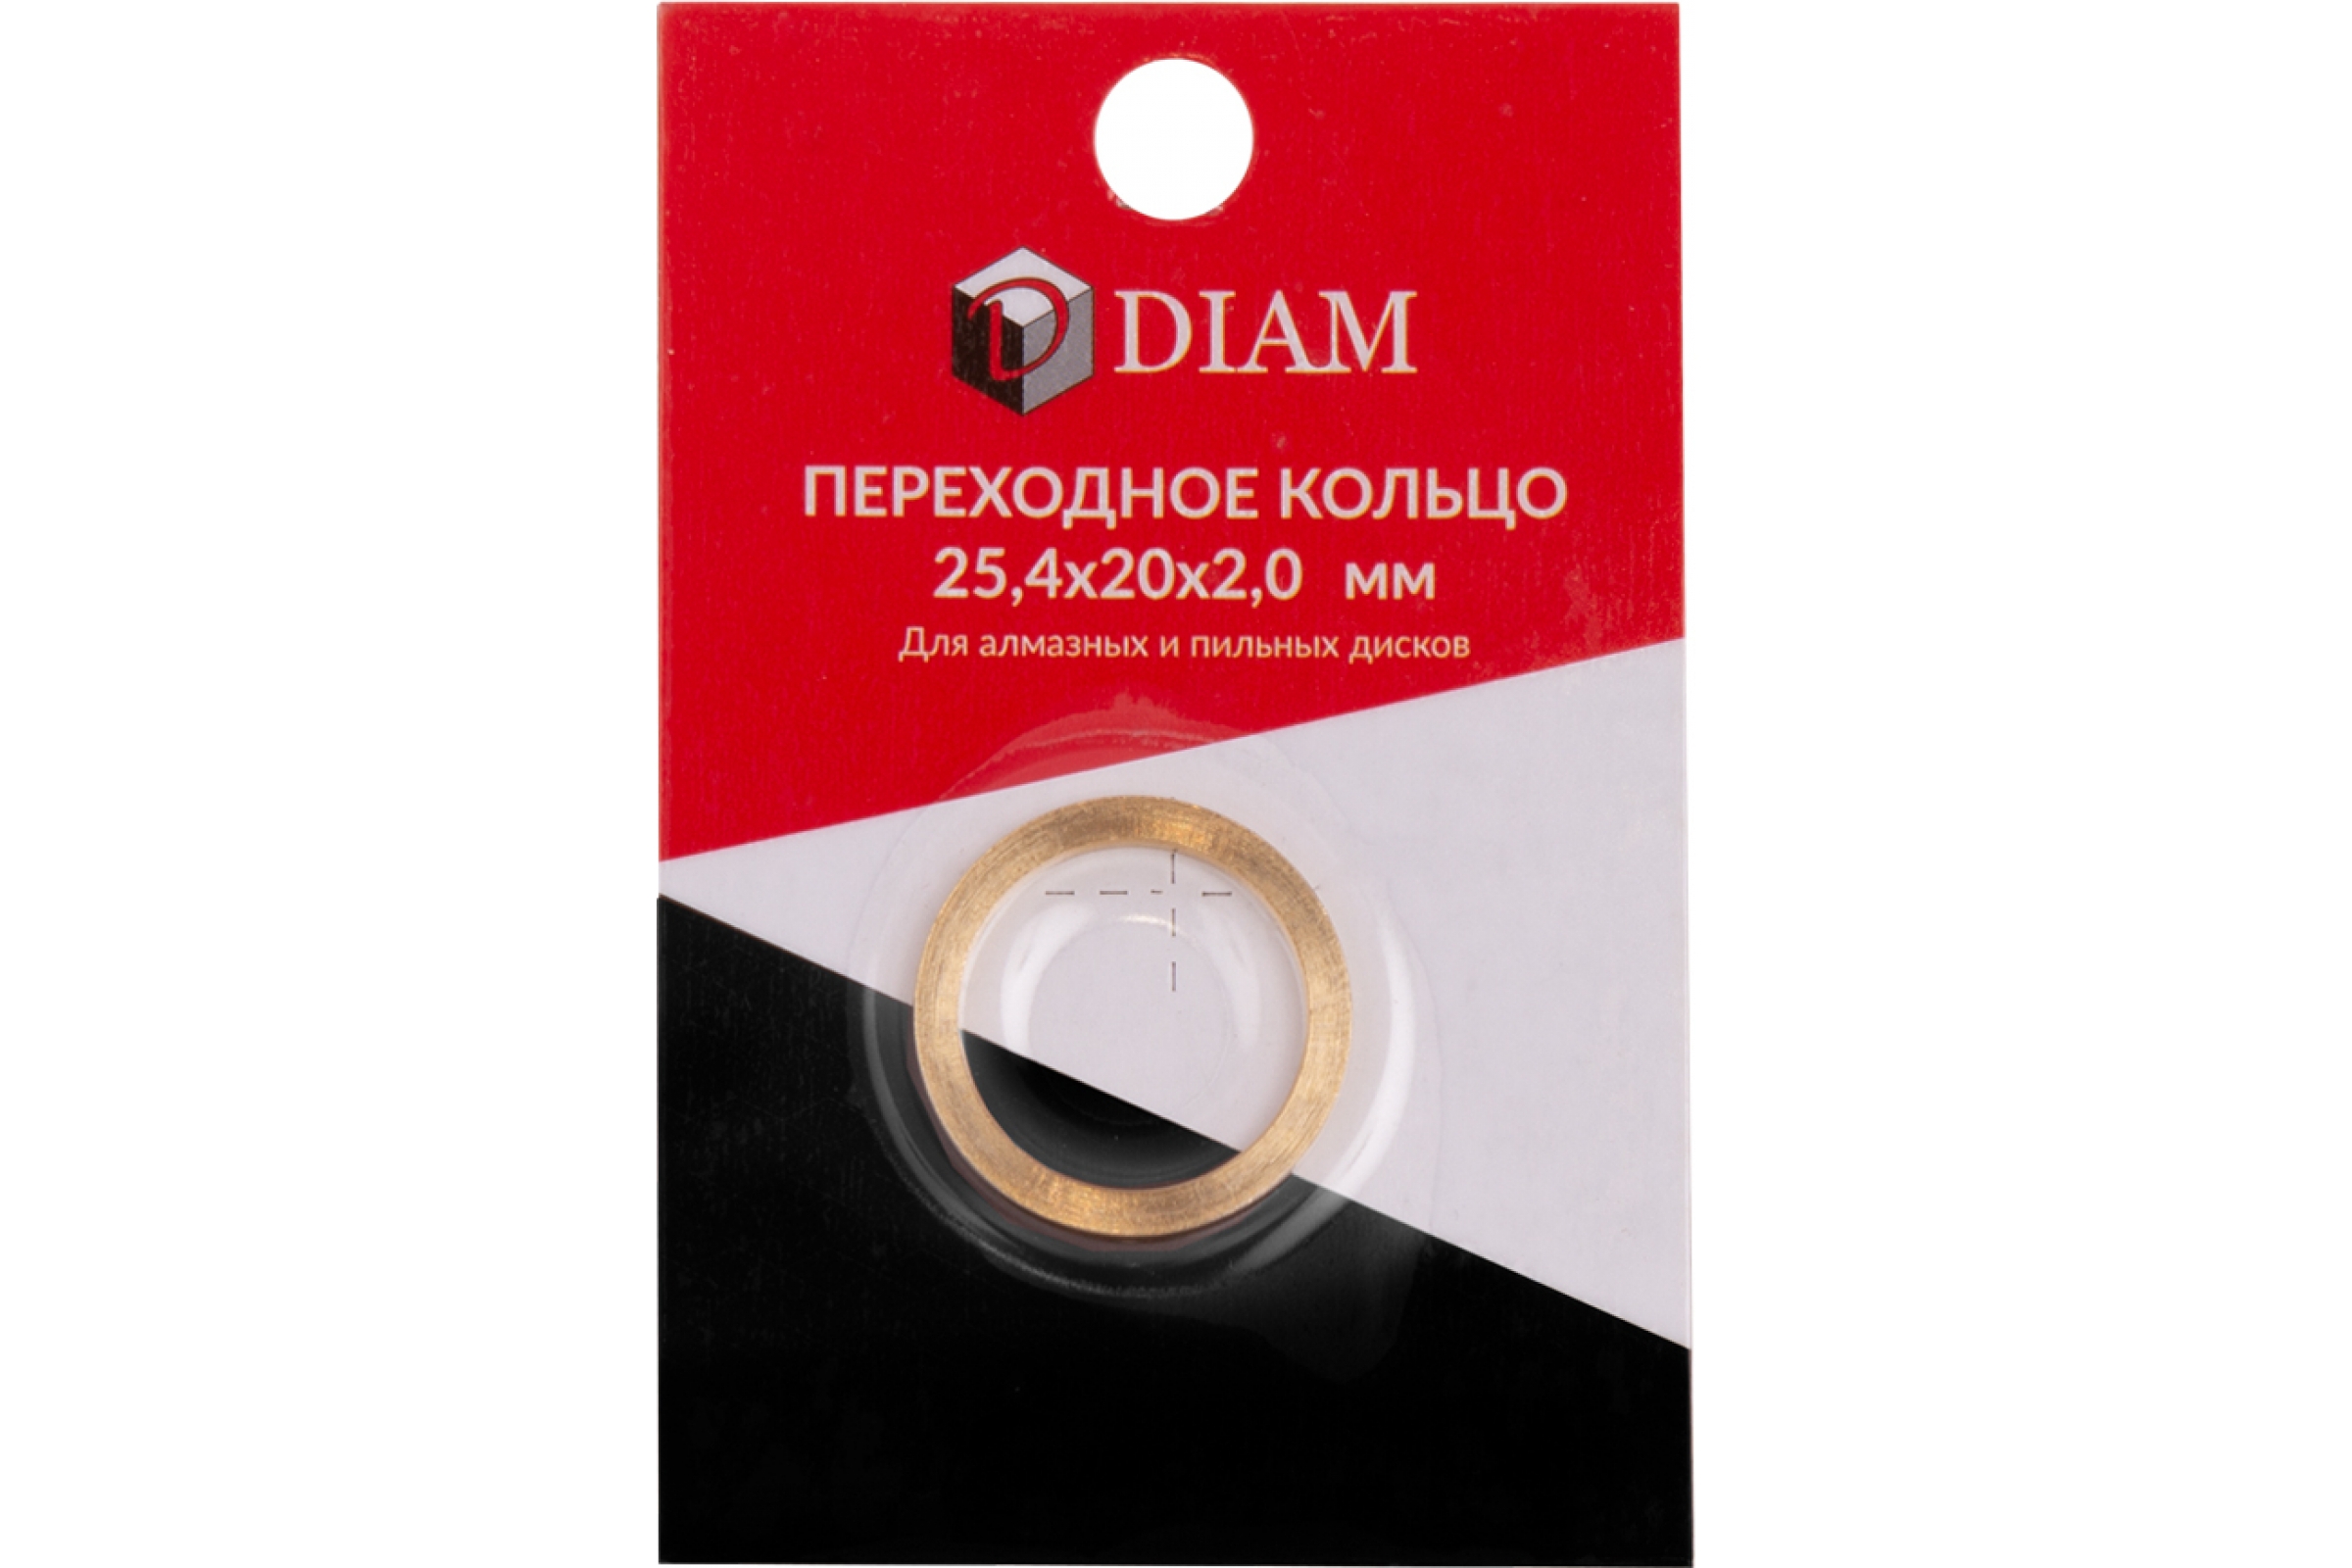 Кольцо переходное DIAM 25,4х20х2,0 (640083) (DIAM)